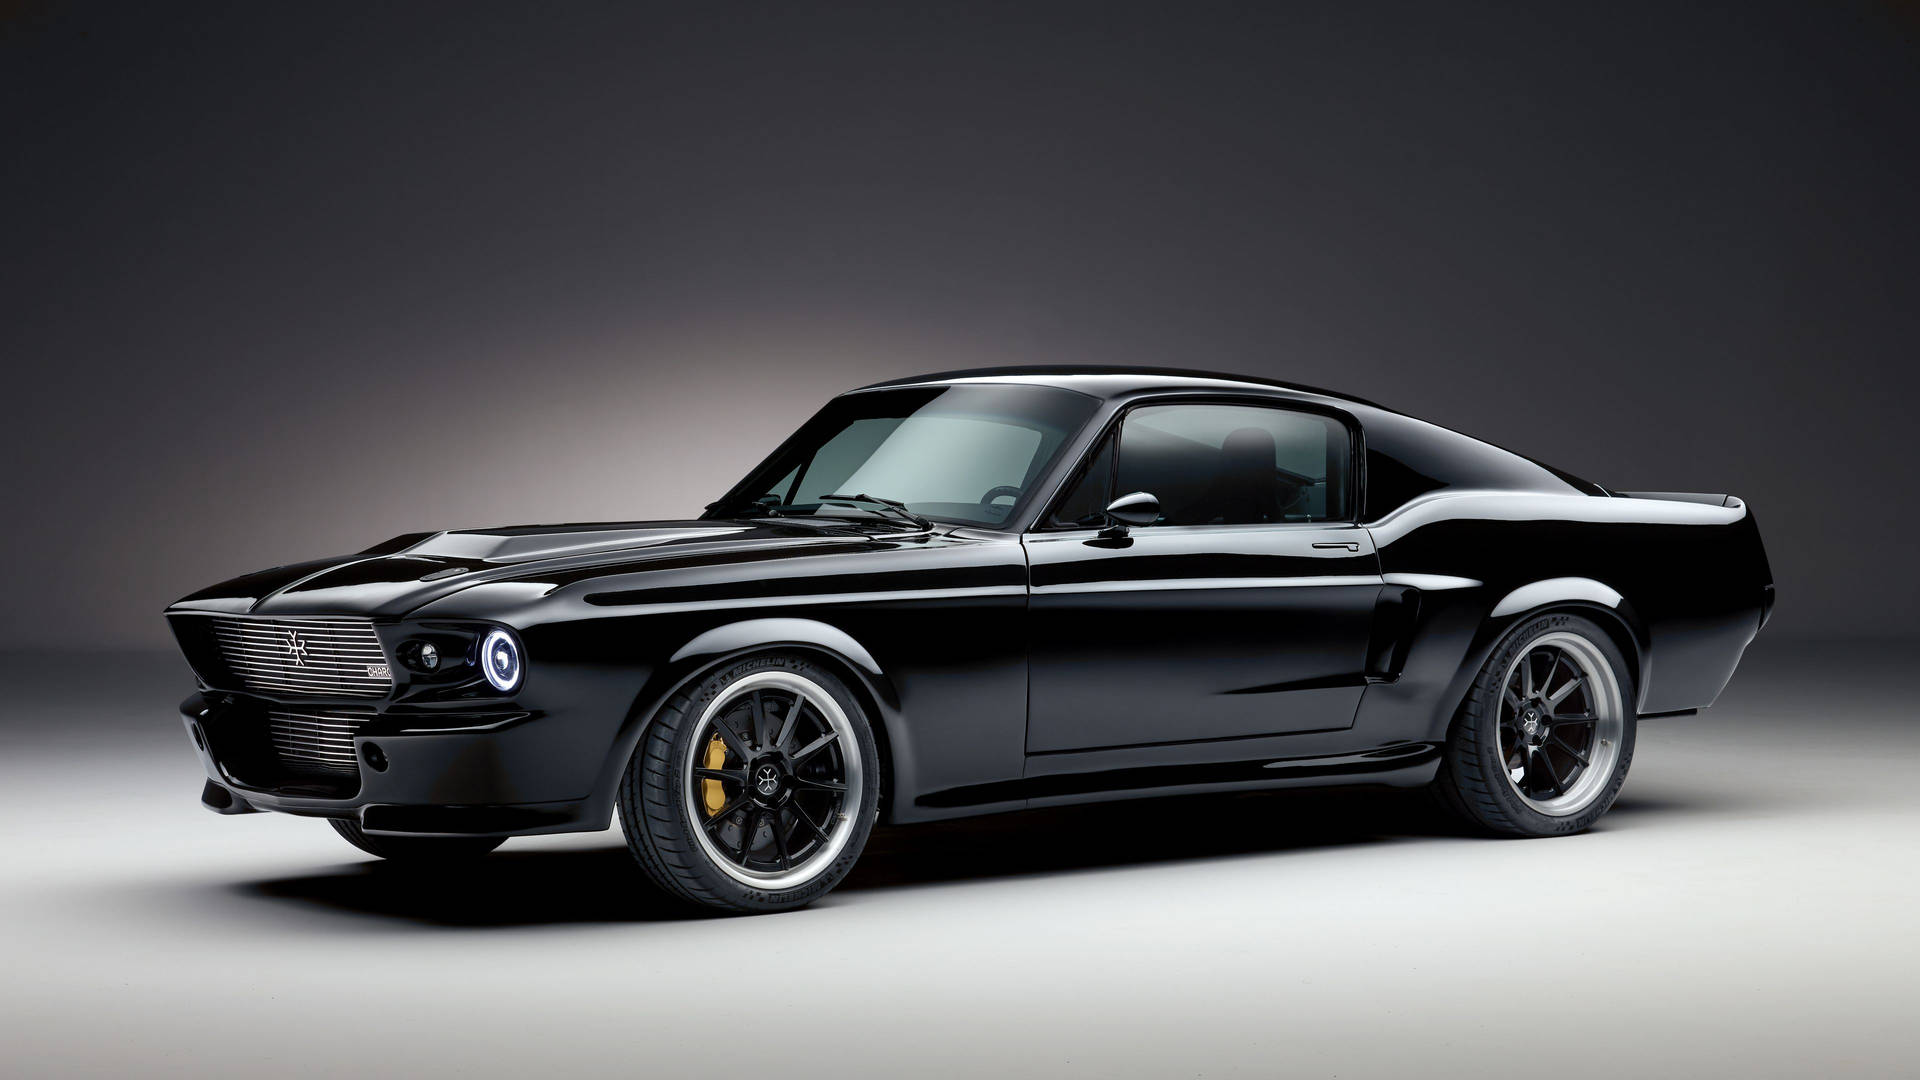 Et kig ind i kraften af denne klassiske og kølige Mustang. Wallpaper